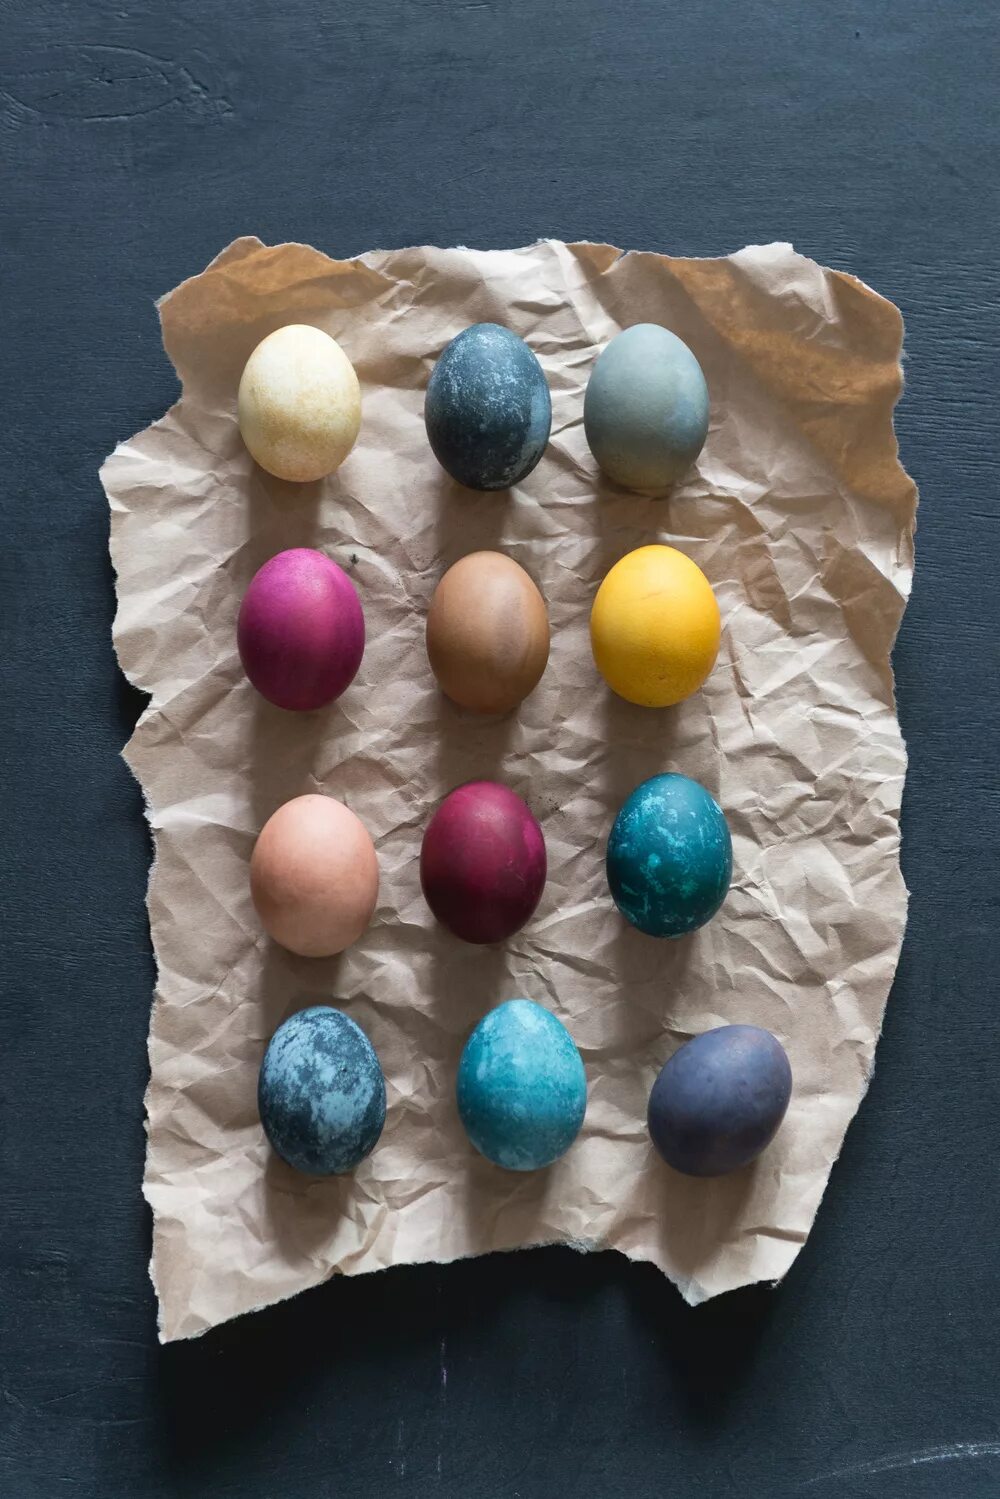 Натуральные красители для яиц. Окрашивание яиц натуральными красителями. Натуральные красители на Пасху. Окрашивание яиц на Пасху натуральными красителями. Как покрасить яйца без красителей